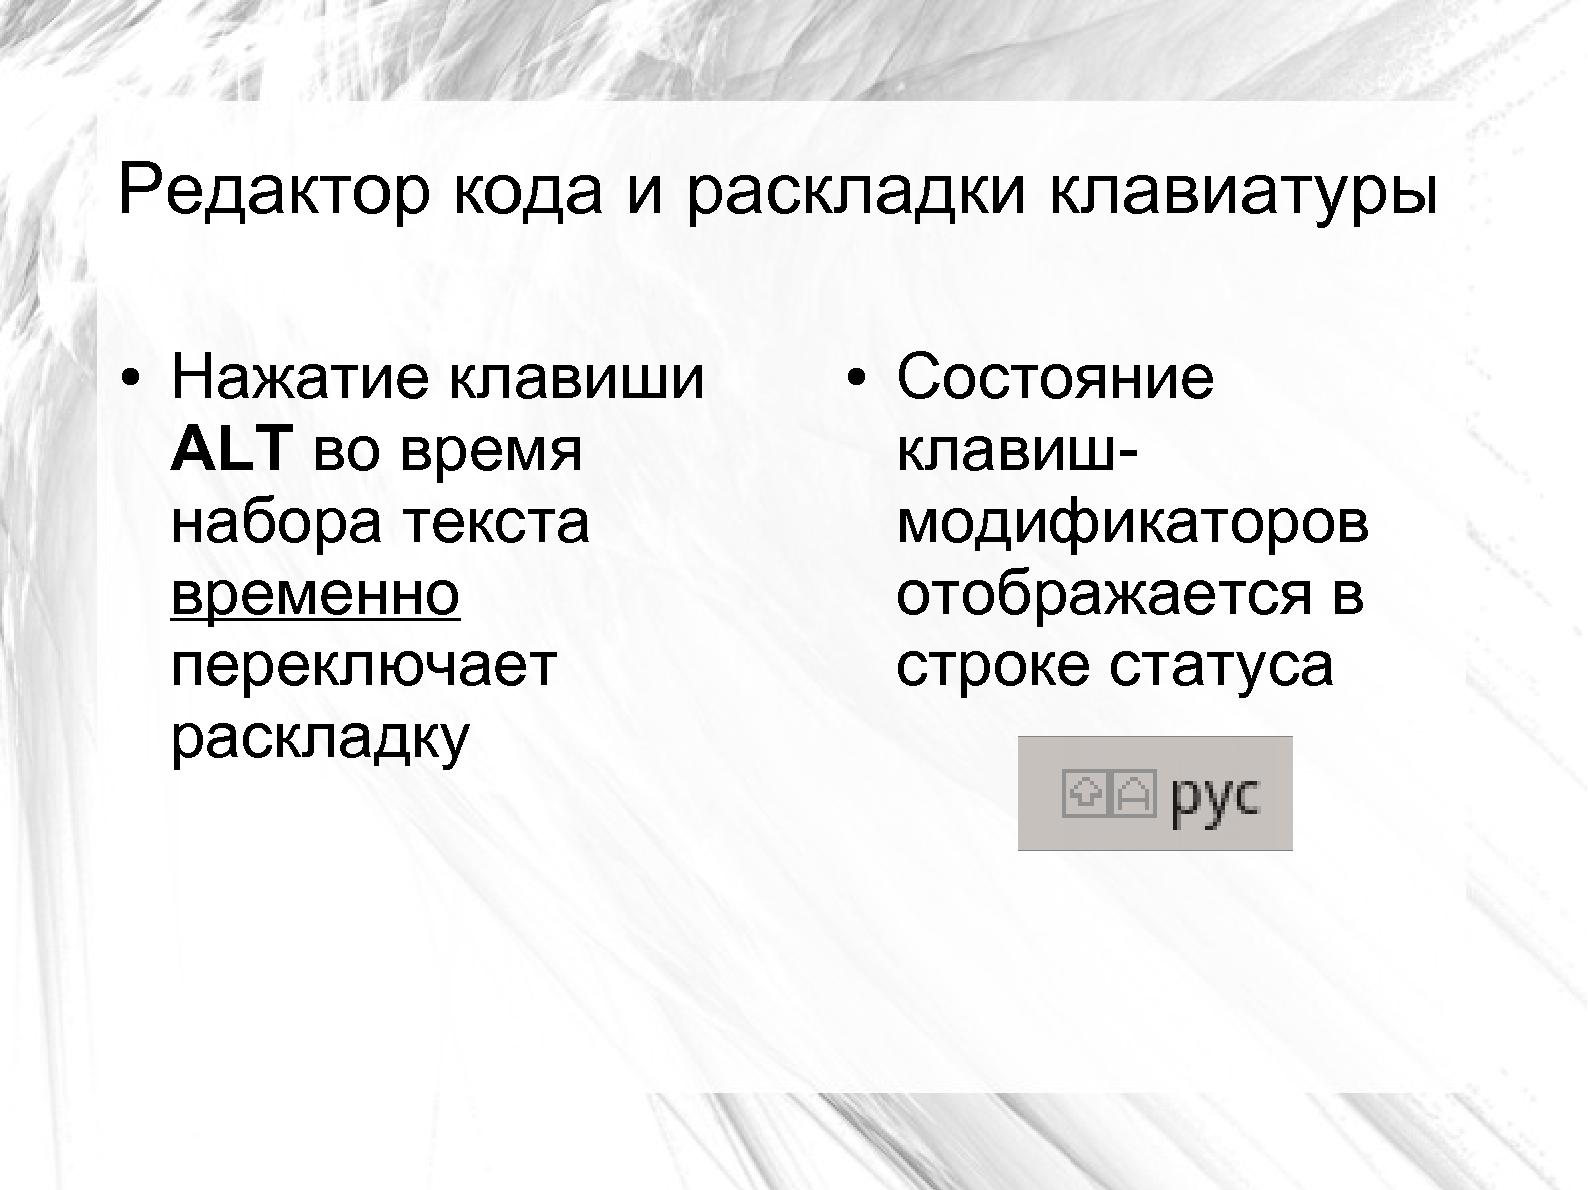 Файл:Ускорение выполнения Кумир-программ с помощью LLVM (Виктор Яковлев, OSEDUCONF-2014).pdf